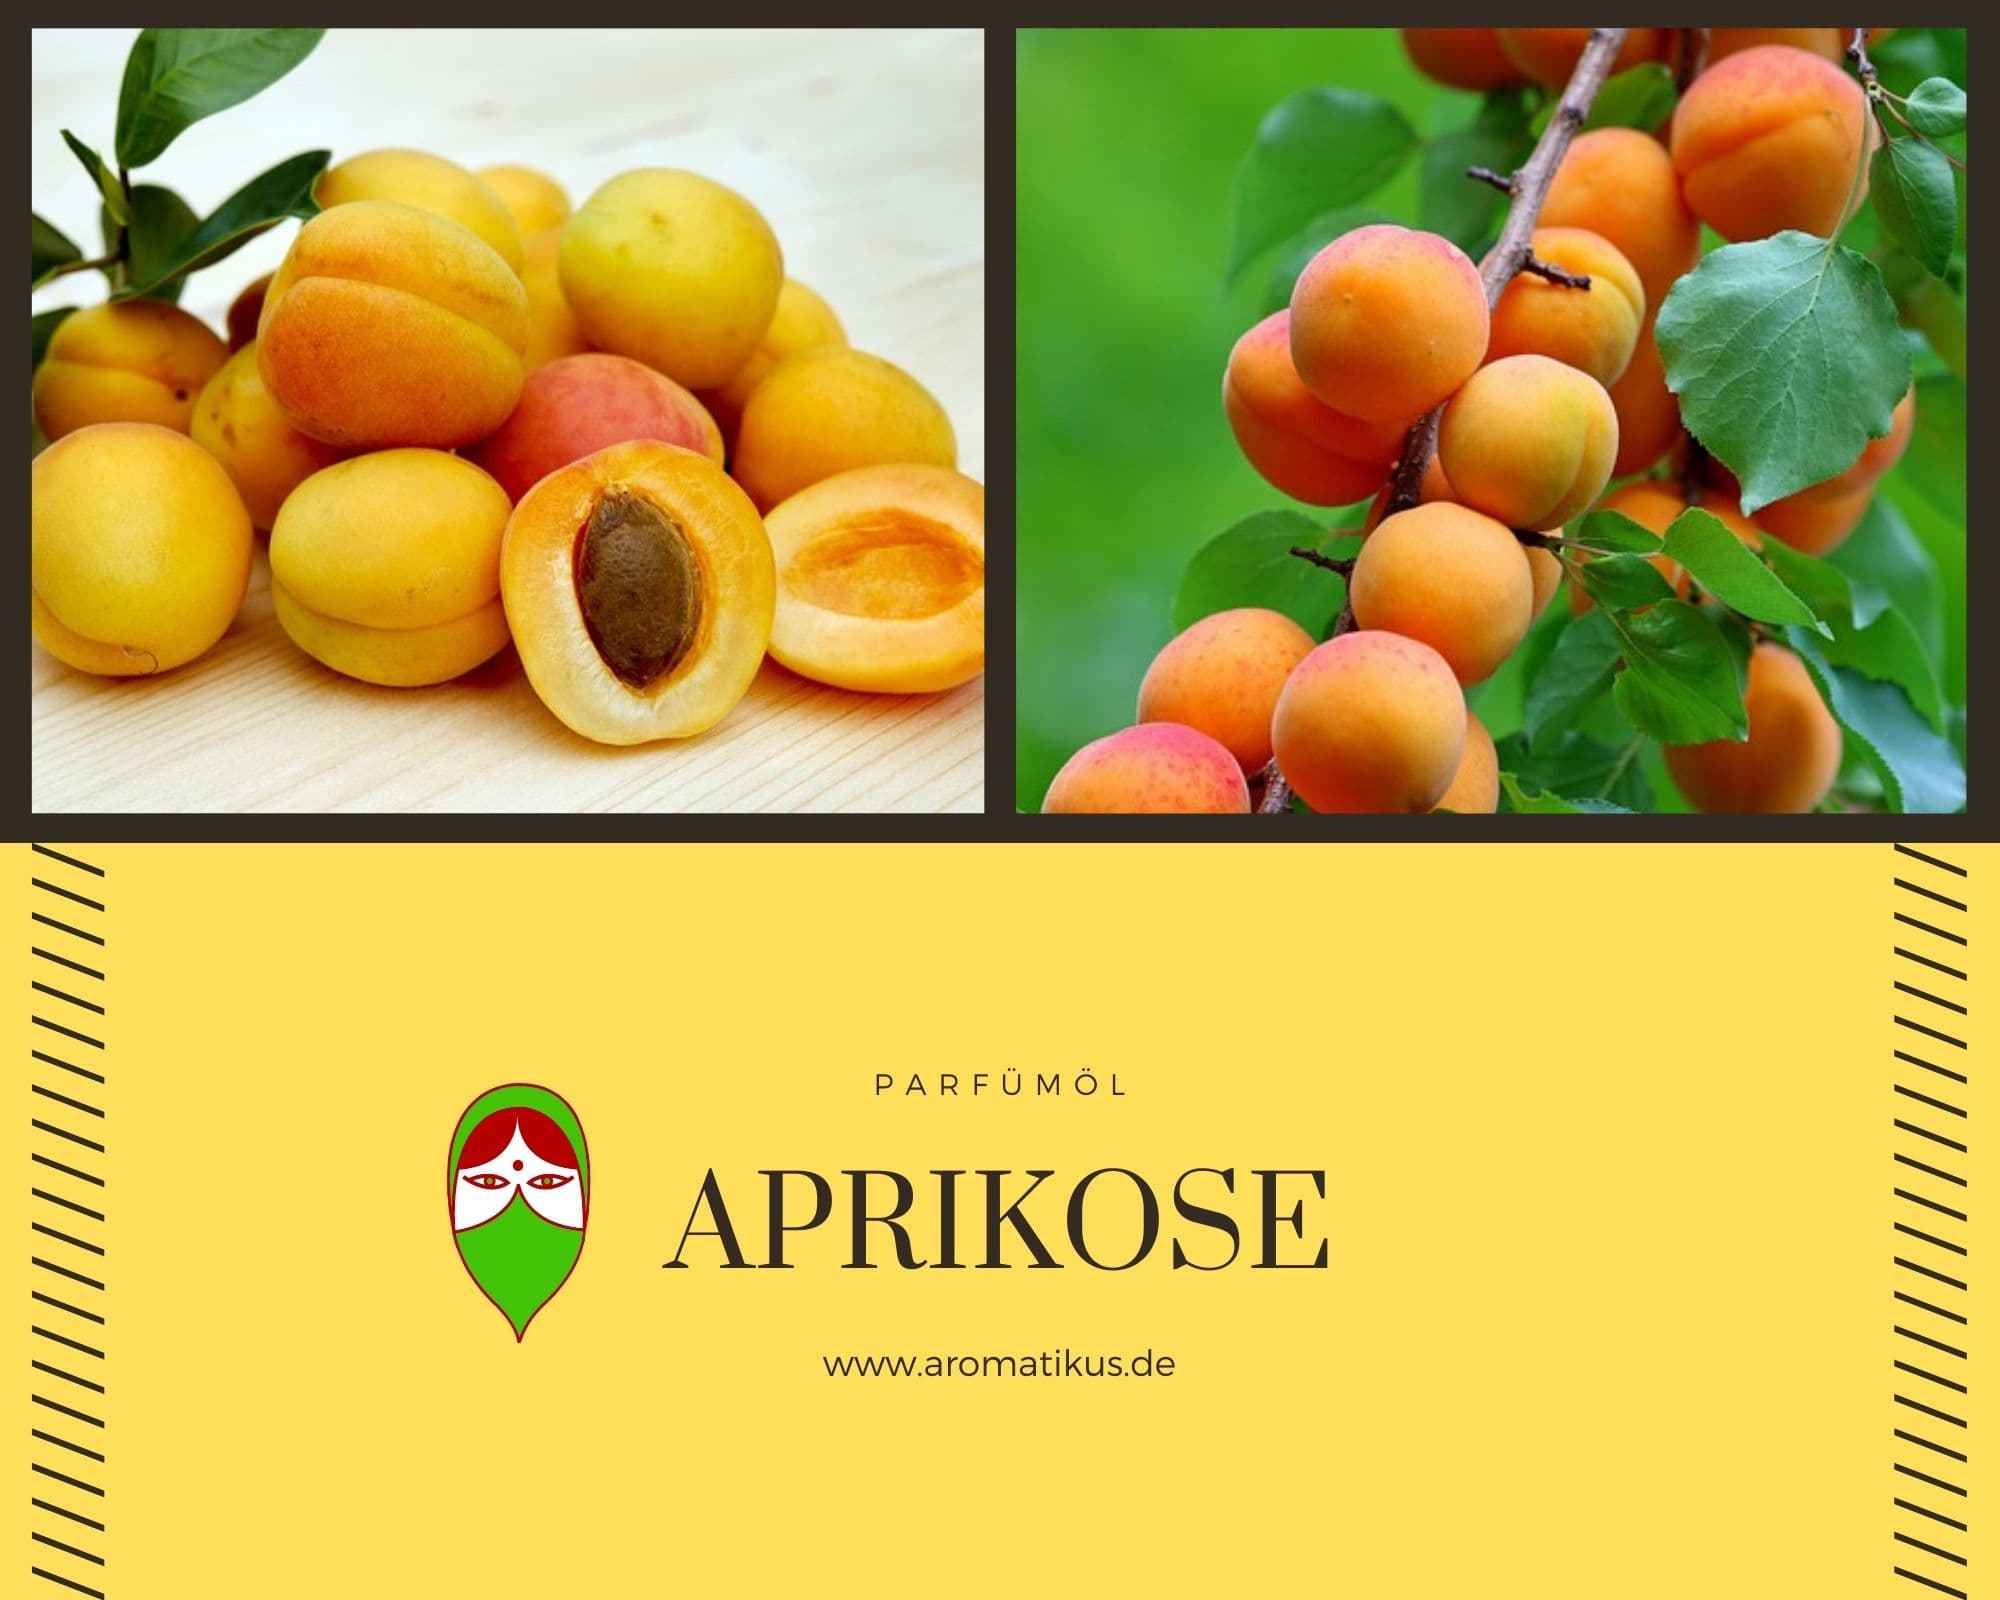 Ätherisches Duftöl Aprikose als Parfümöl von Aromatikus